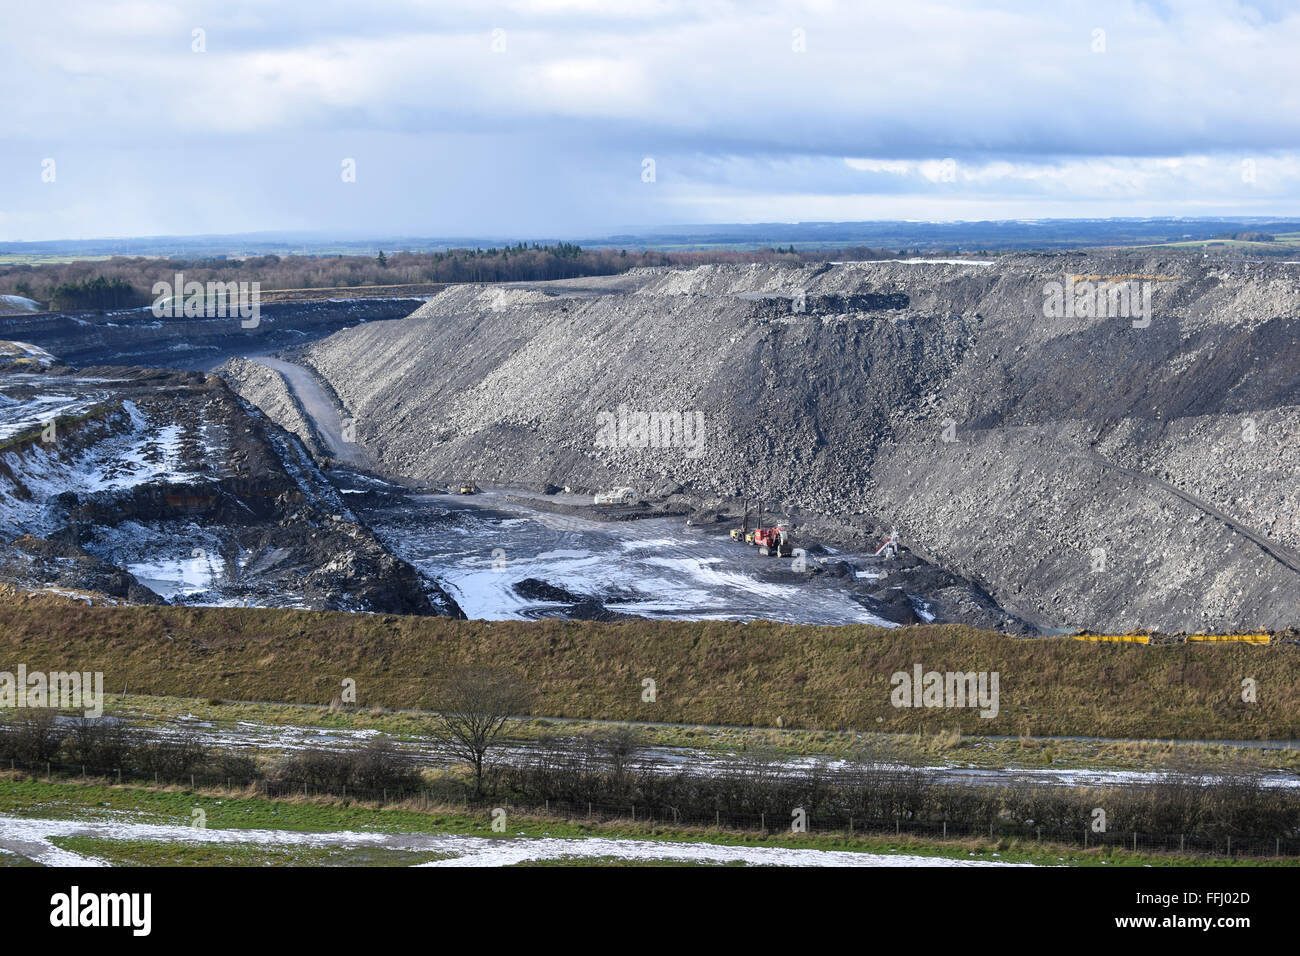 Banks Mining opencast site, near Cramlington, Northumberland, UK. Stock Photo